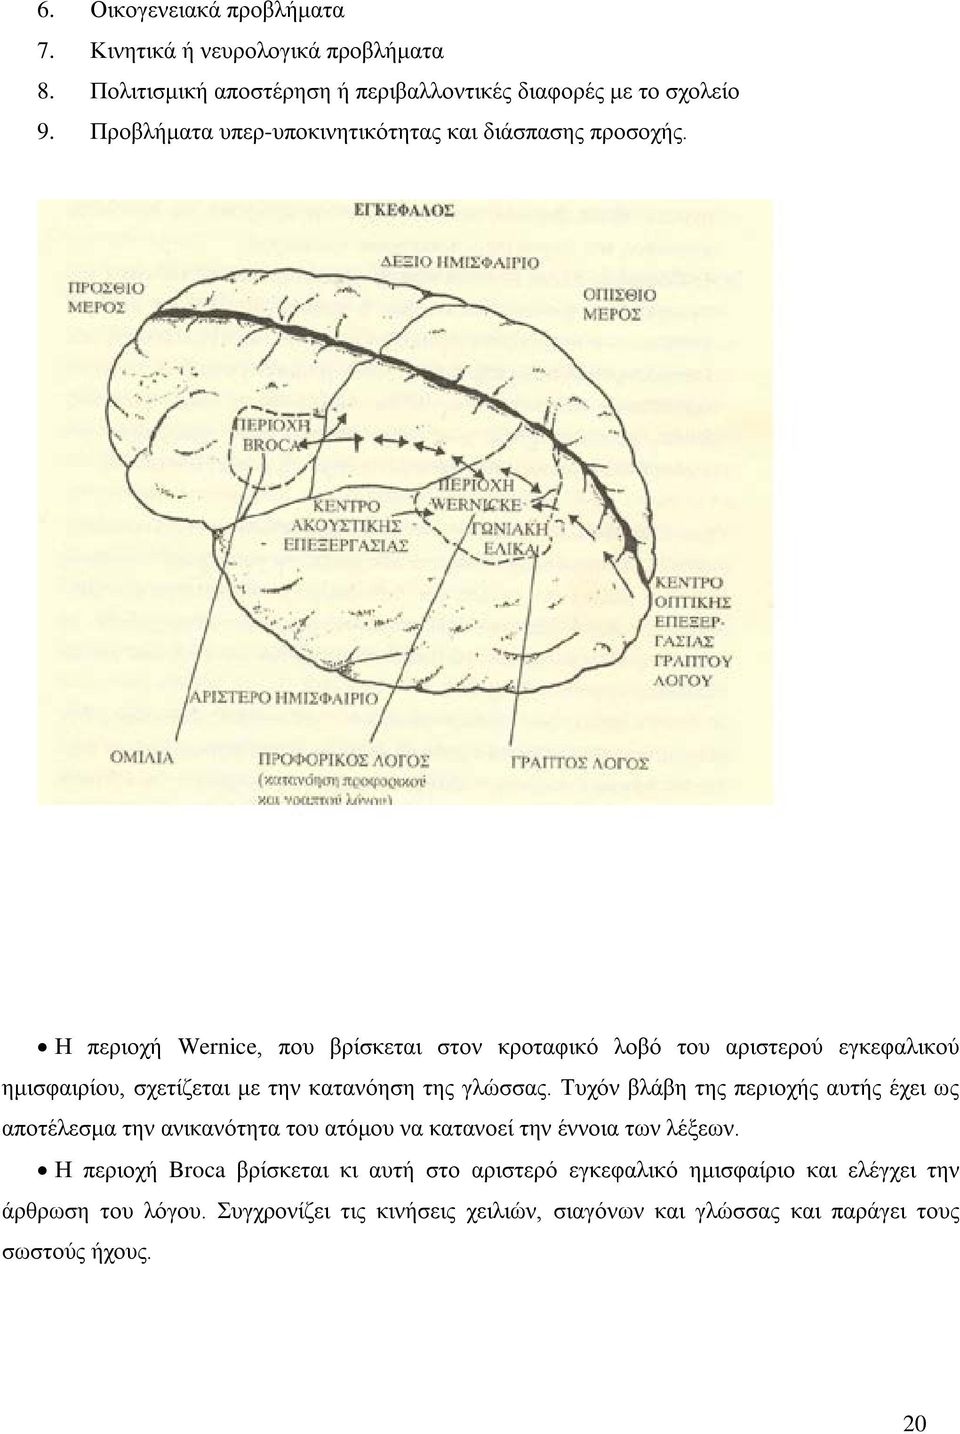 Η περιοχή Wernice, που βρίσκεται στον κροταφικό λοβό του αριστερού εγκεφαλικού ημισφαιρίου, σχετίζεται με την κατανόηση της γλώσσας.